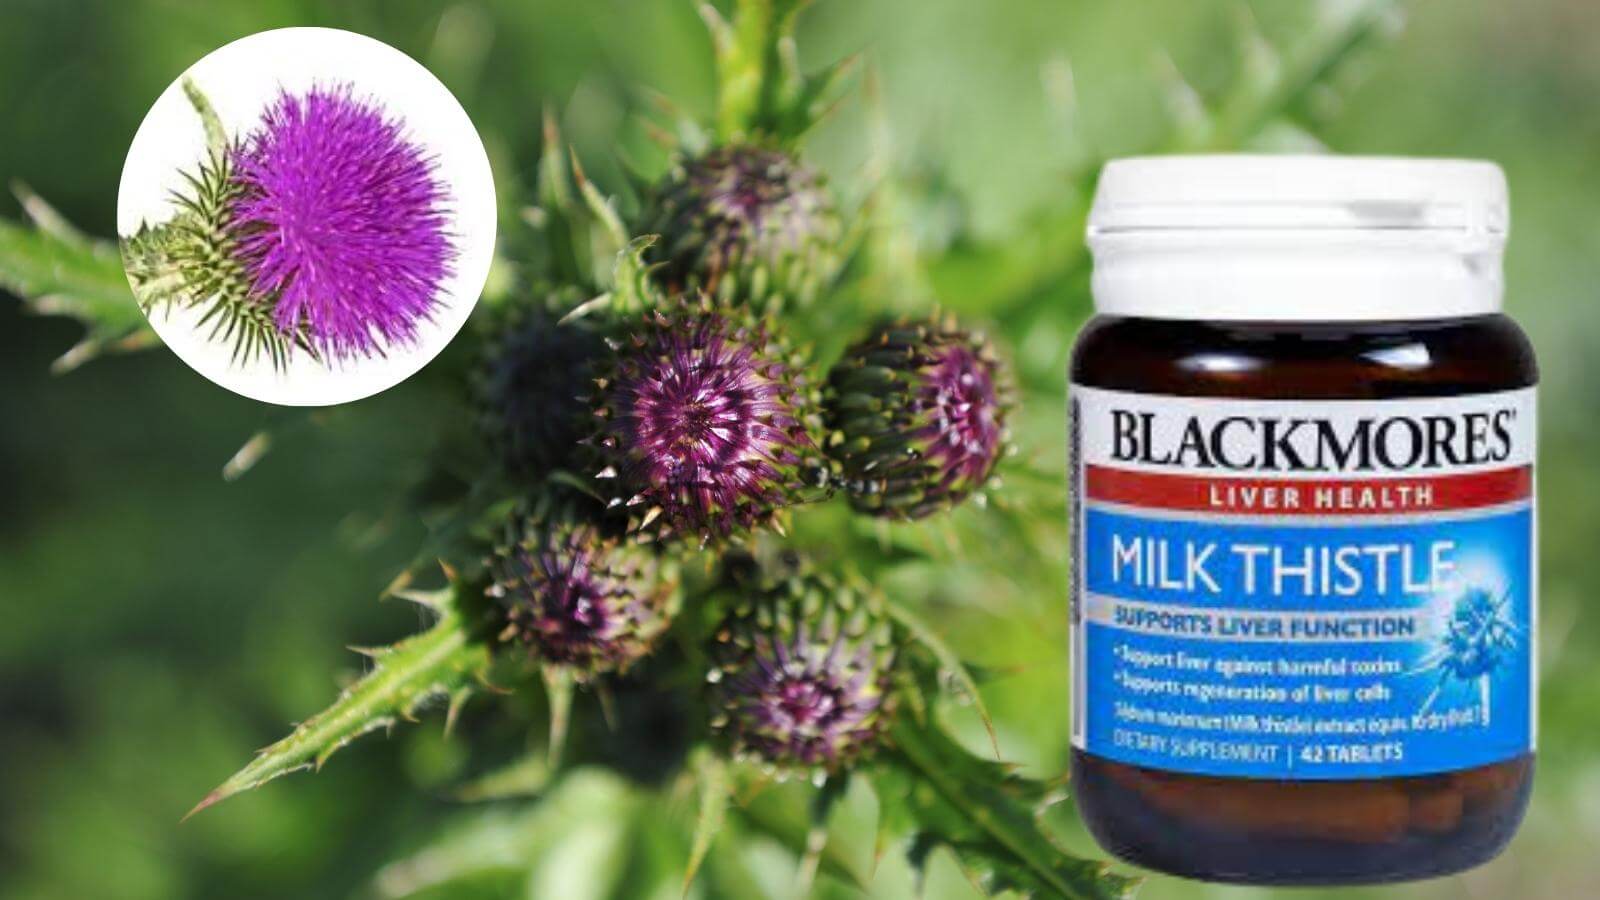 Blackmores Milk thistle giúp thải độc, tăng cường chức năng gan